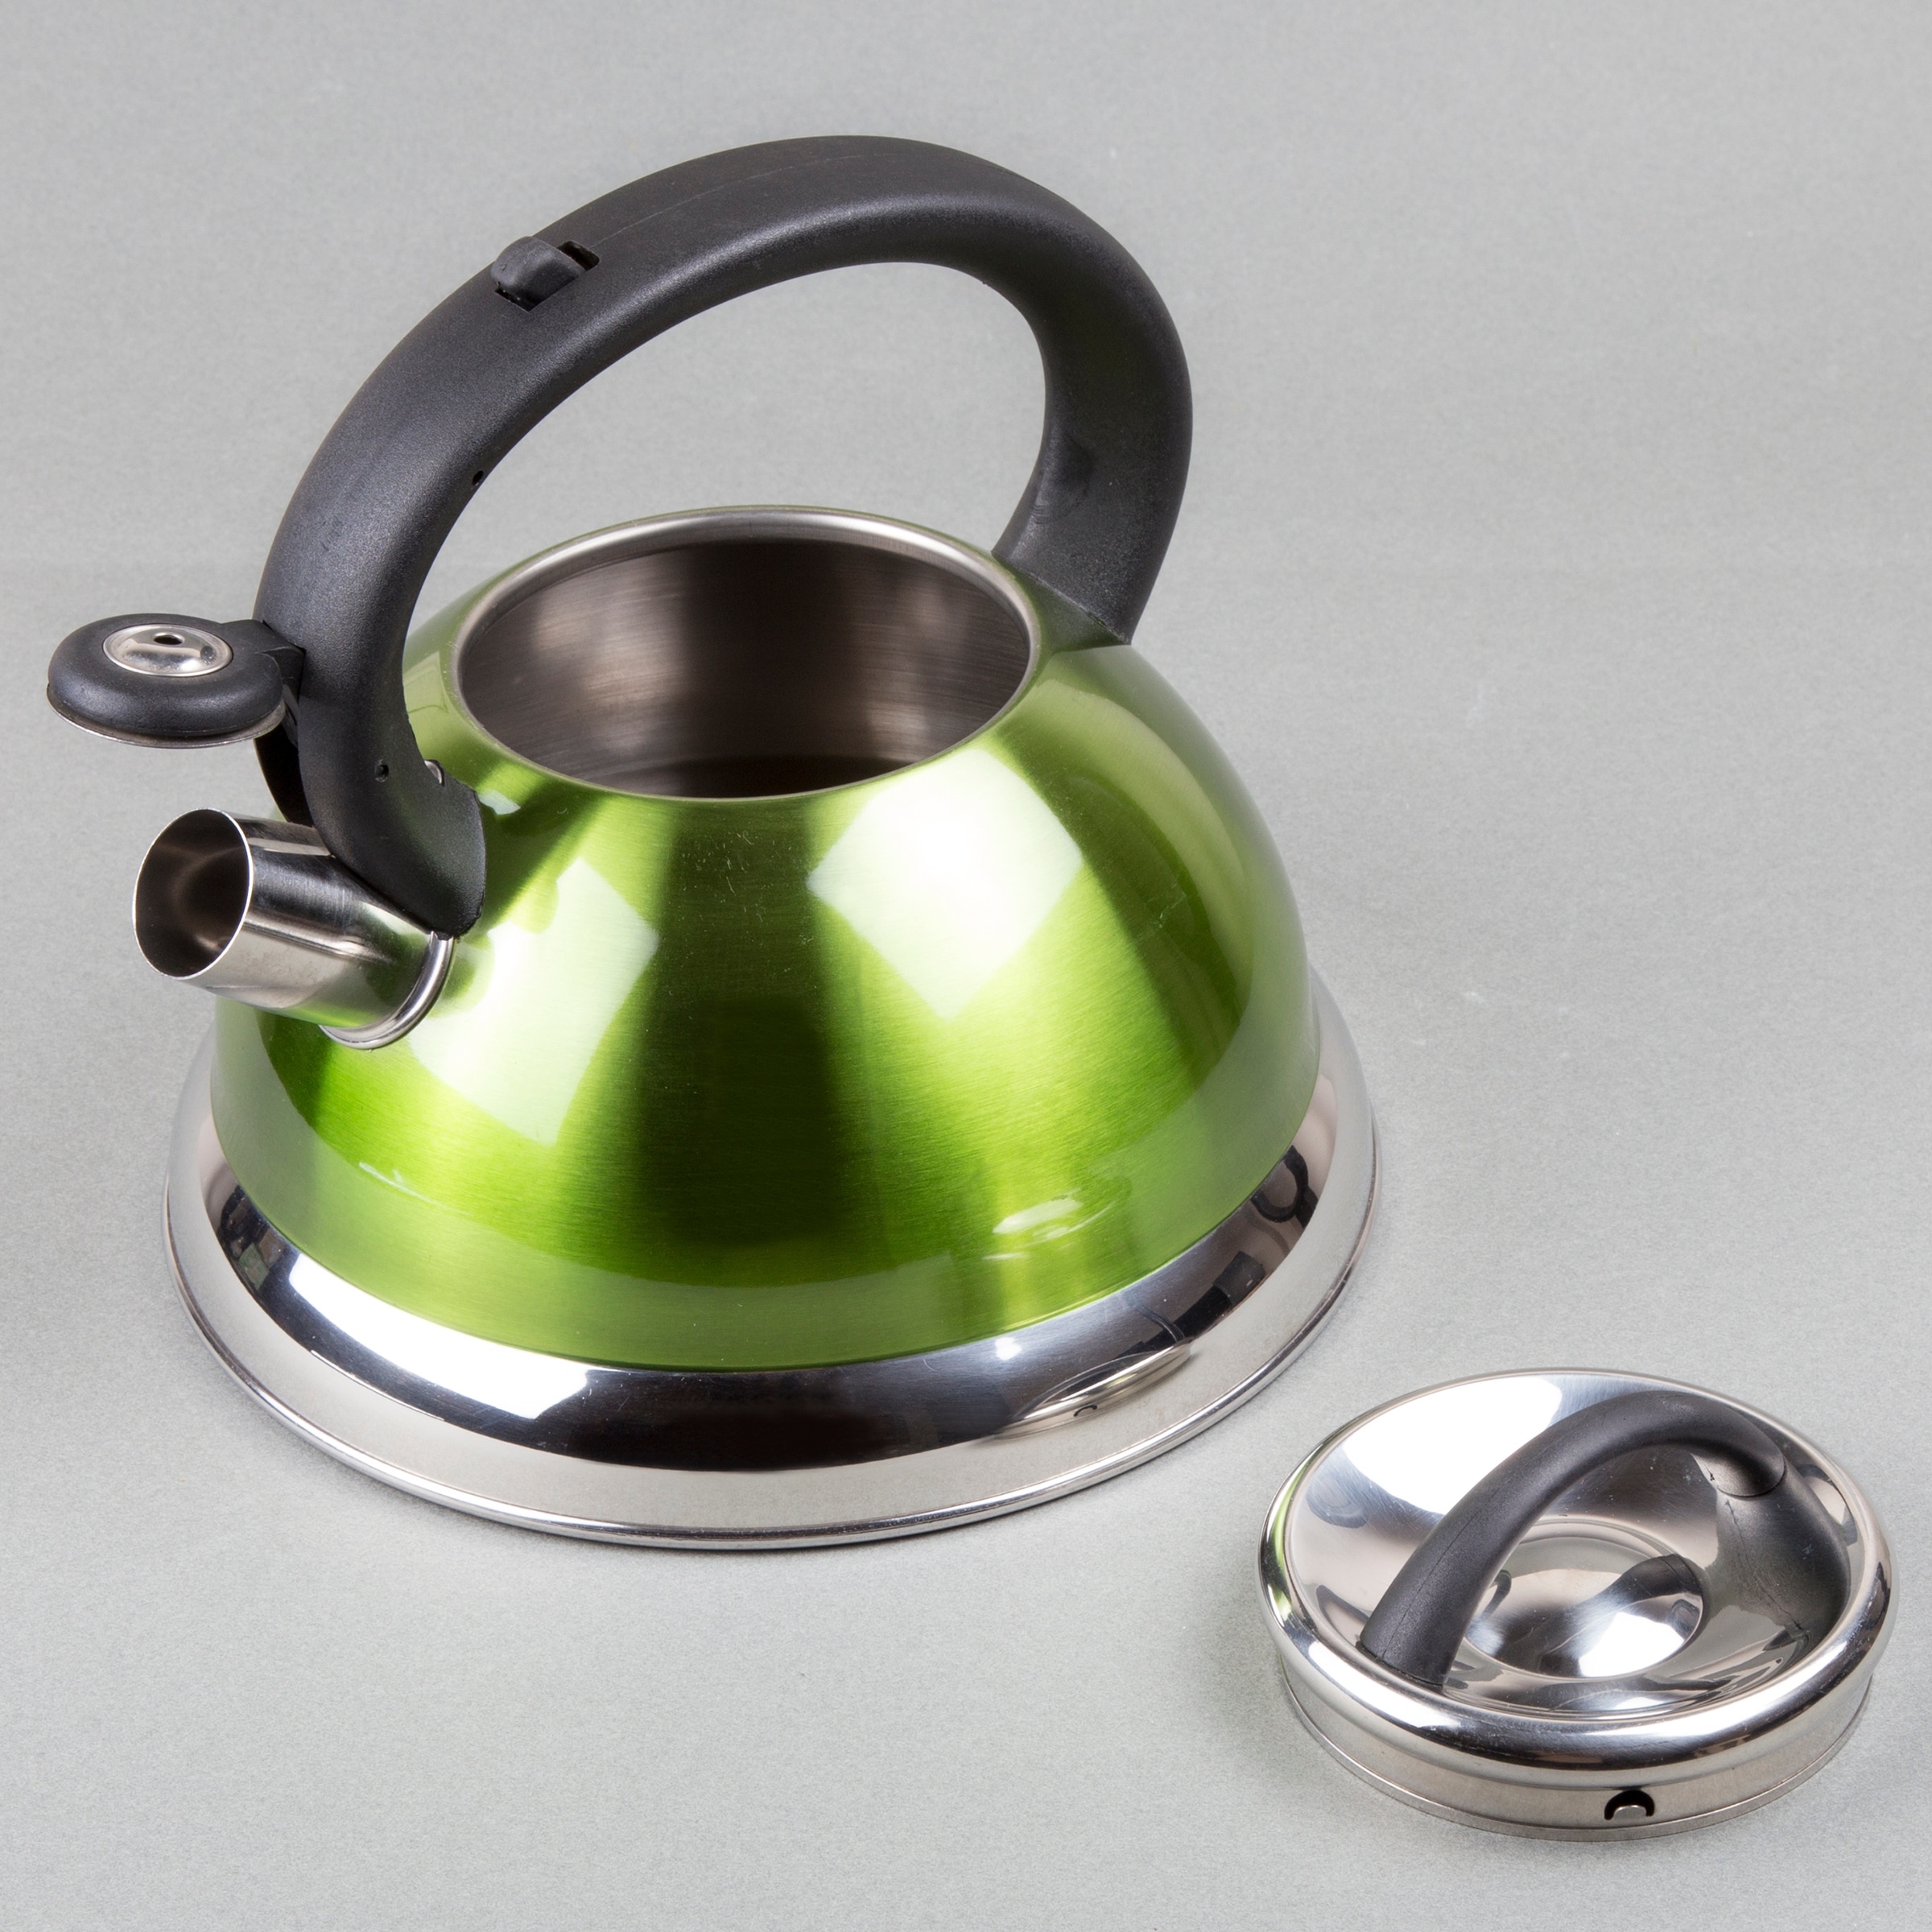 Demeyere Resto 2.6 Quart Stainless Steel Whistling Tea Kettle